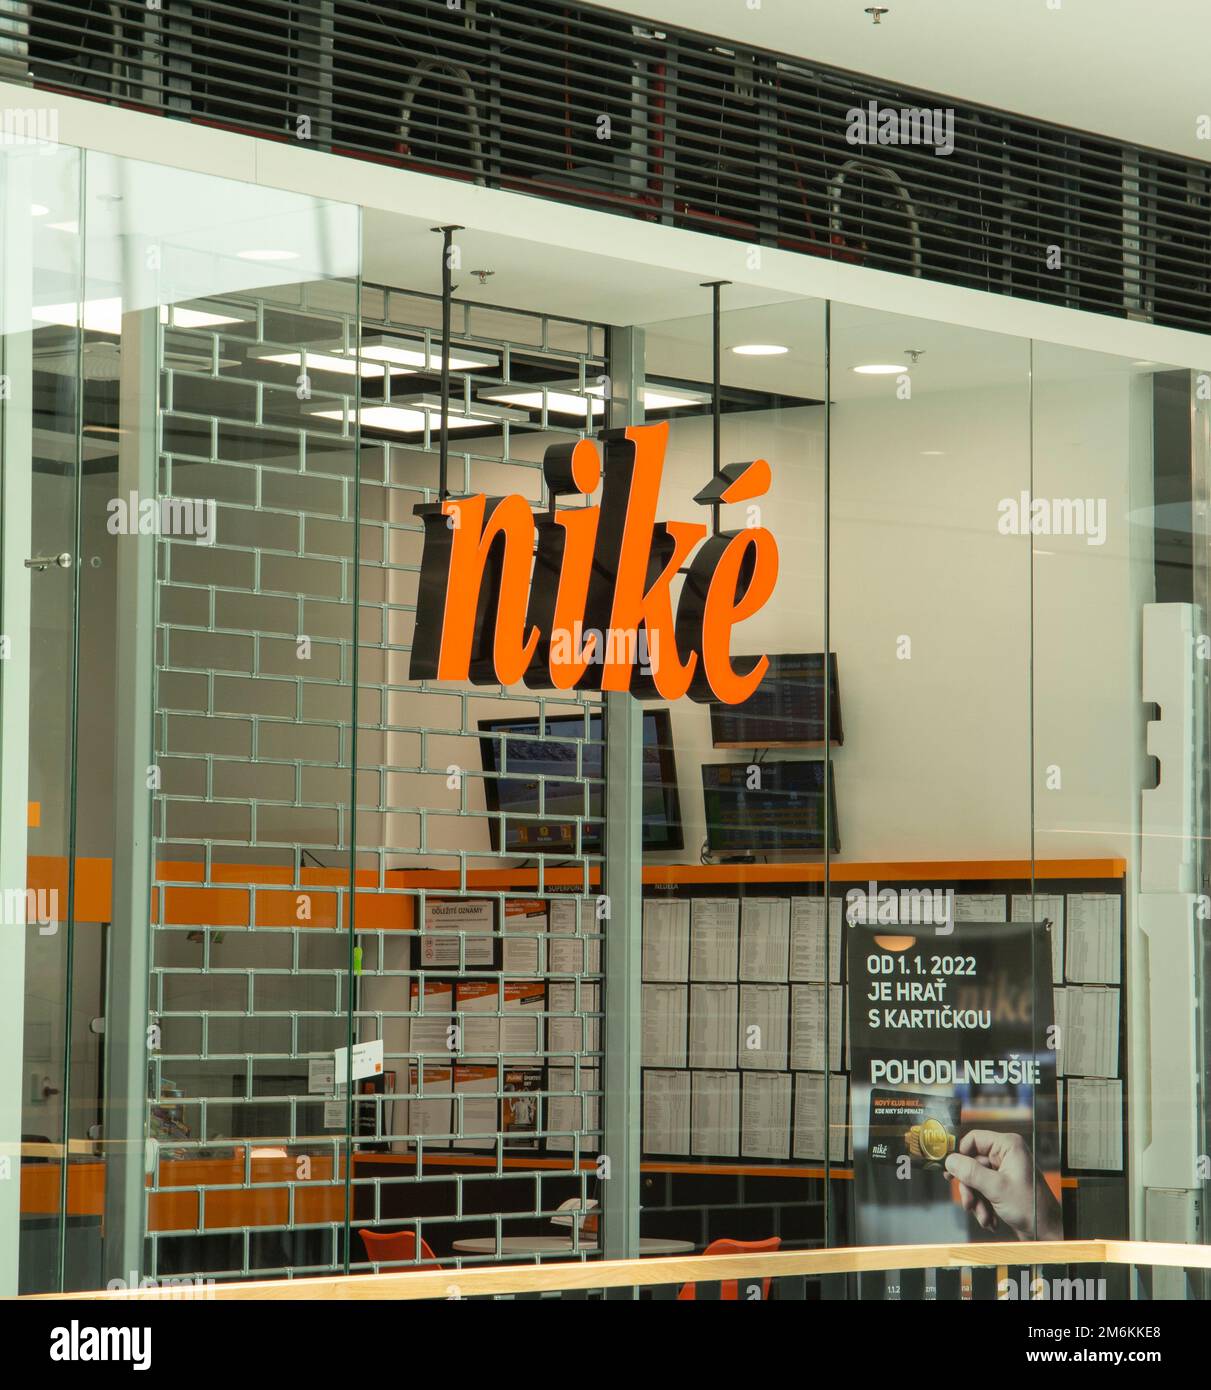 Nitra, Slovaquie - 19 juin 2022 : boutique Nike dans le centre commercial. Nike Paris Company slovaquie. Banque D'Images